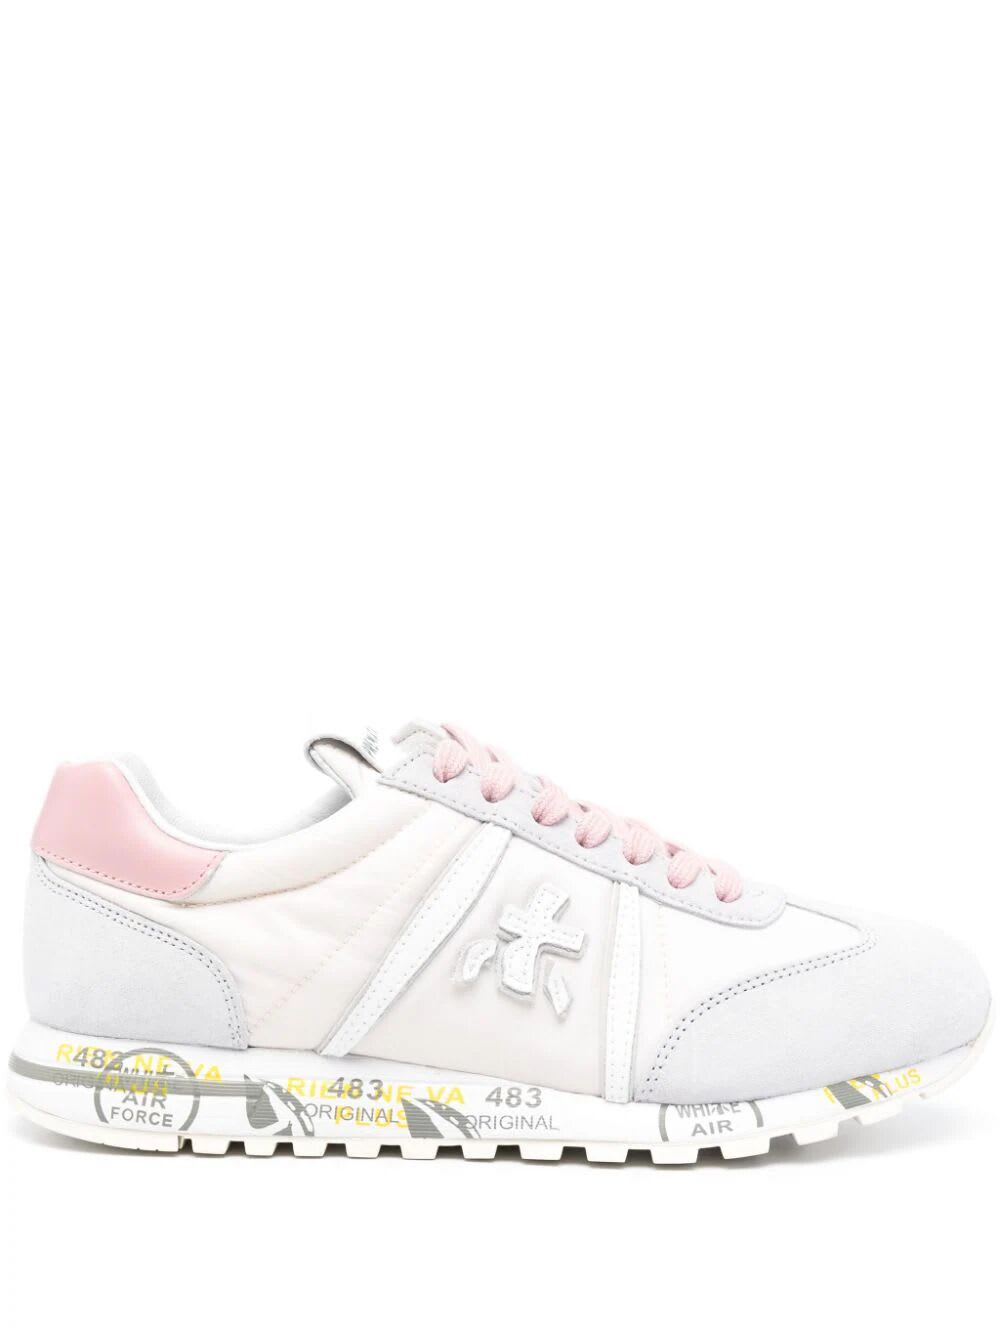 Premiata Lucyd Bi Material Sneakers In Pink